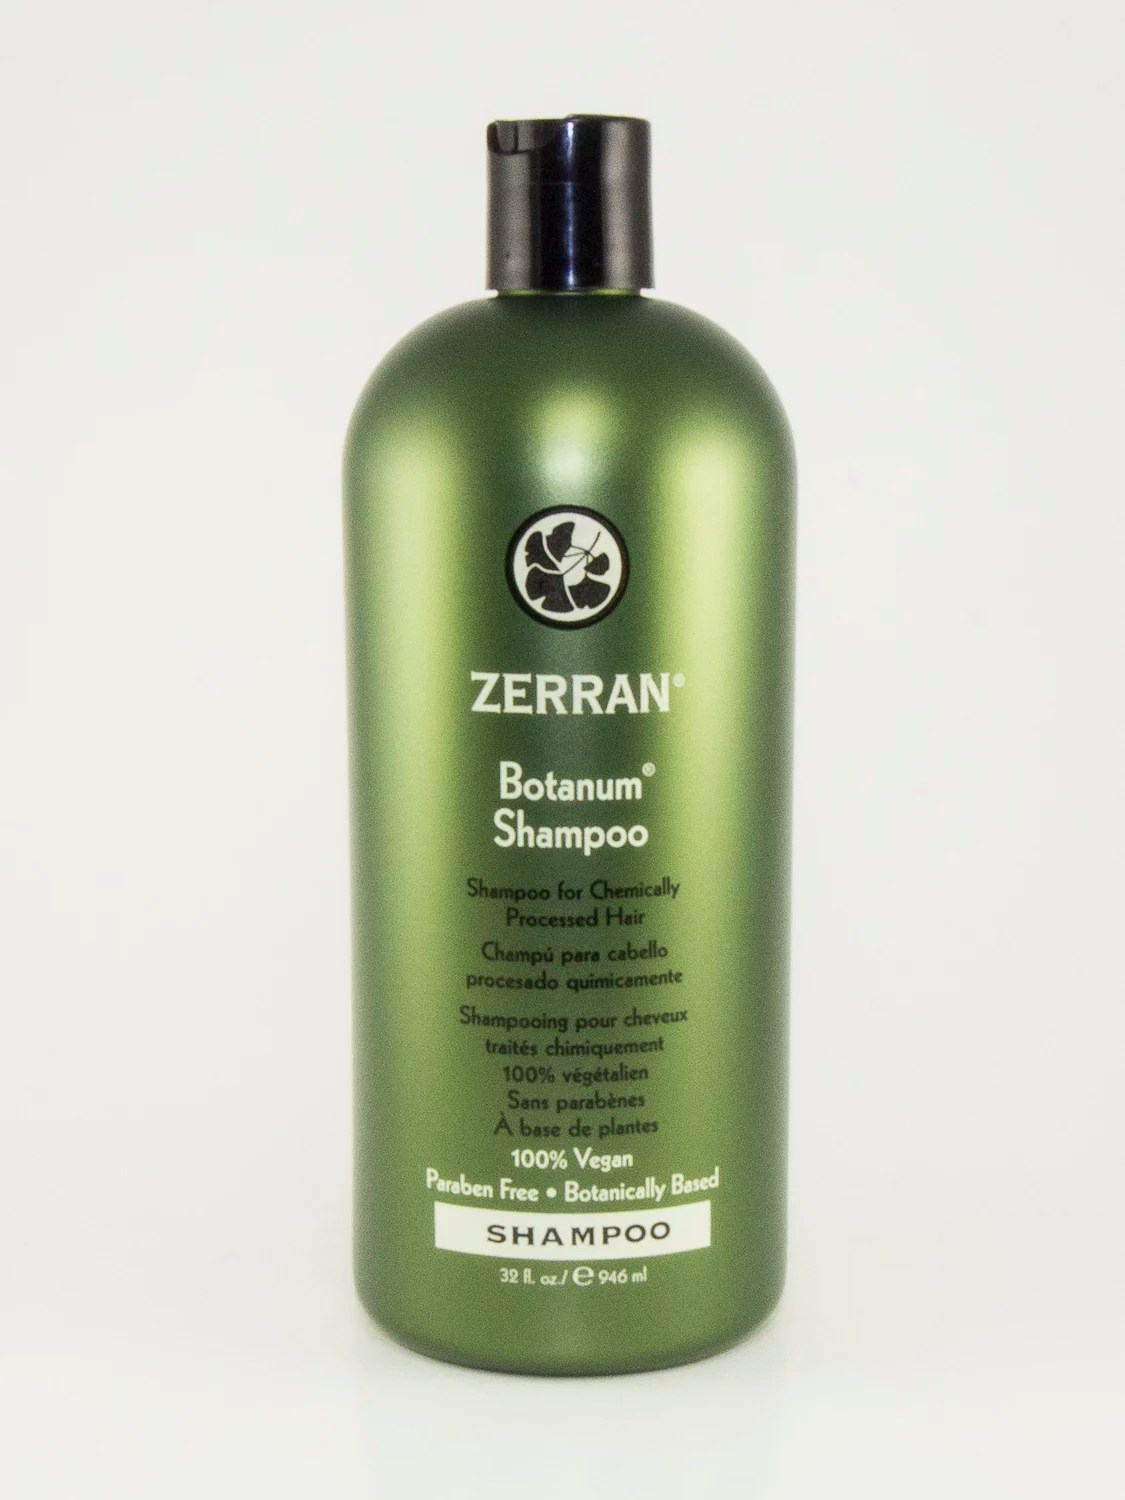 Zerran Botanum Shampoo